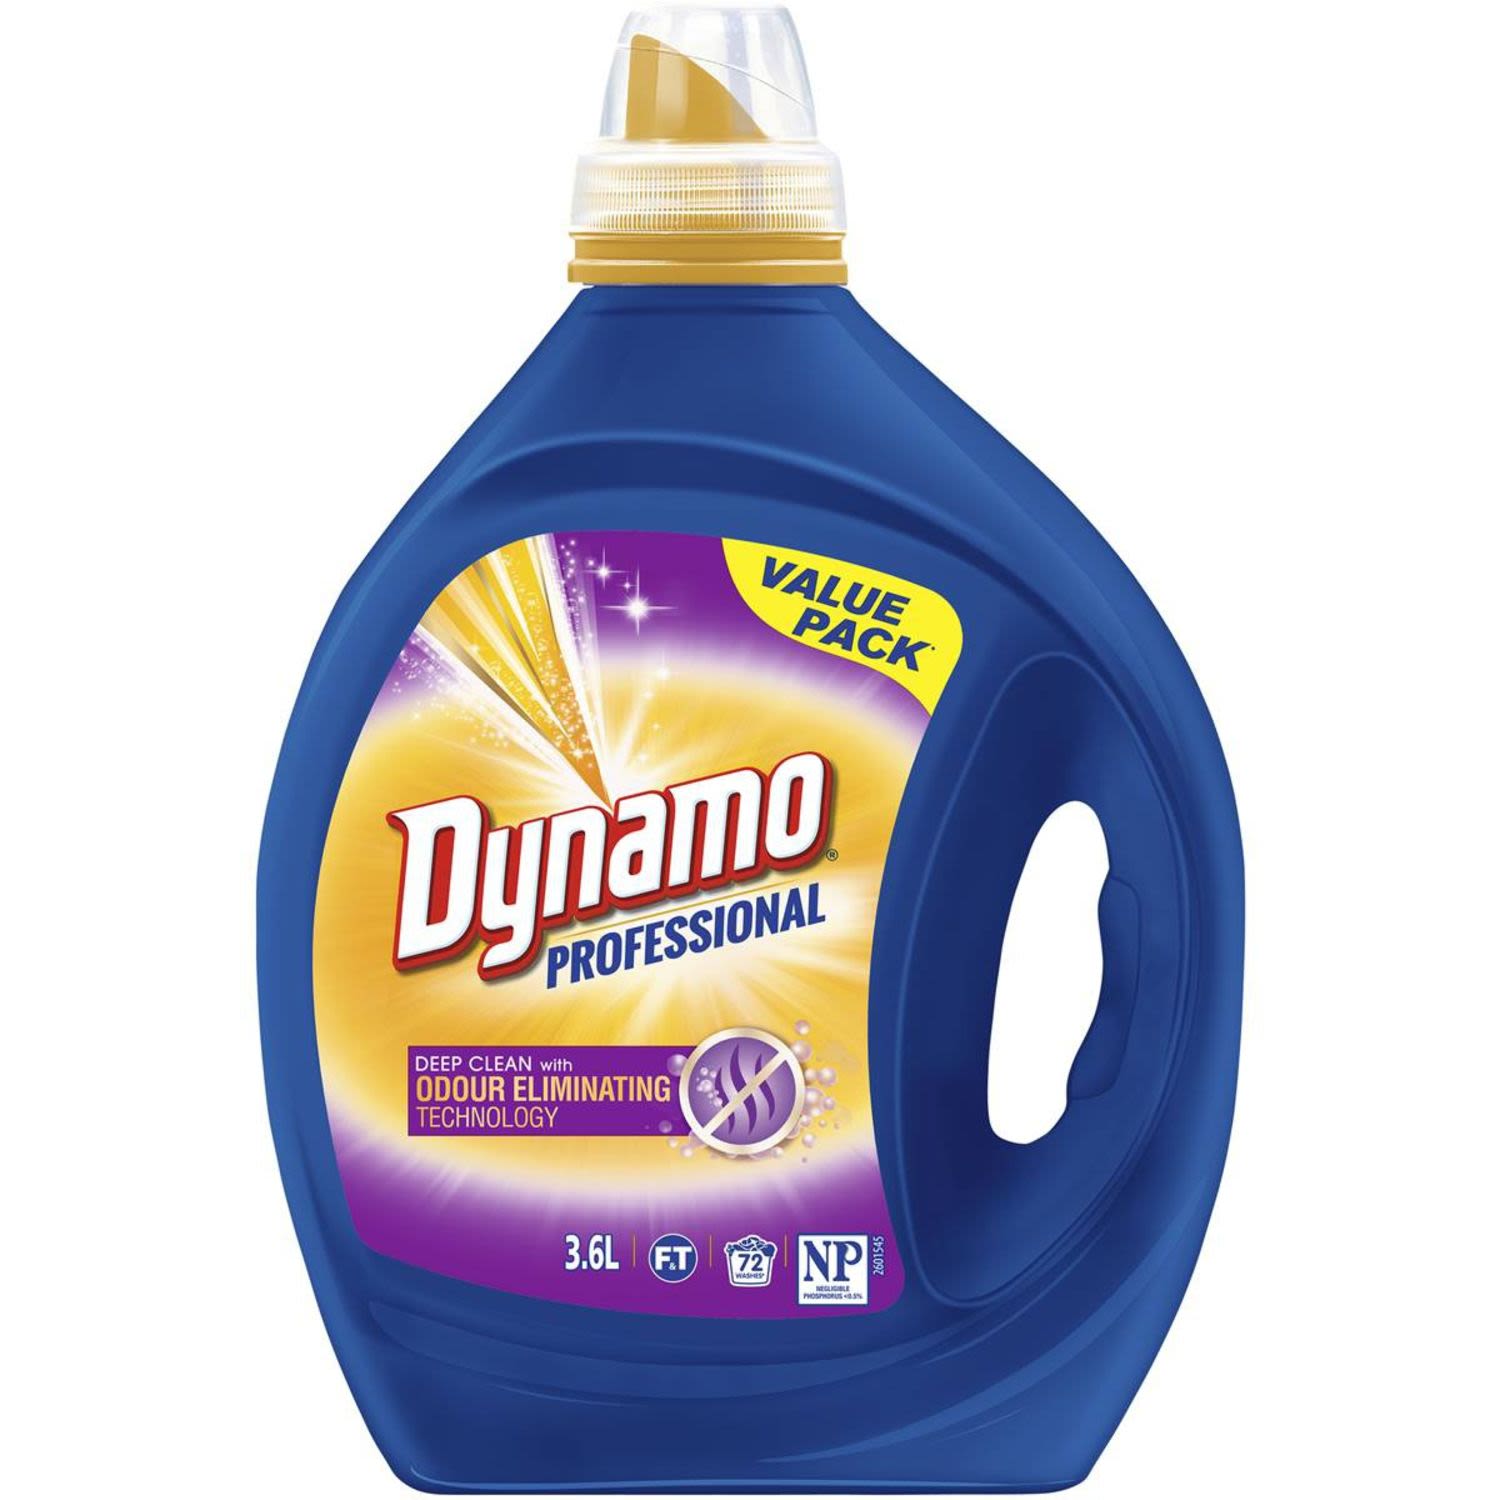 Dynamo Professional Odour Eliminating Laundry Detergent Liquid, 3.6 Litre